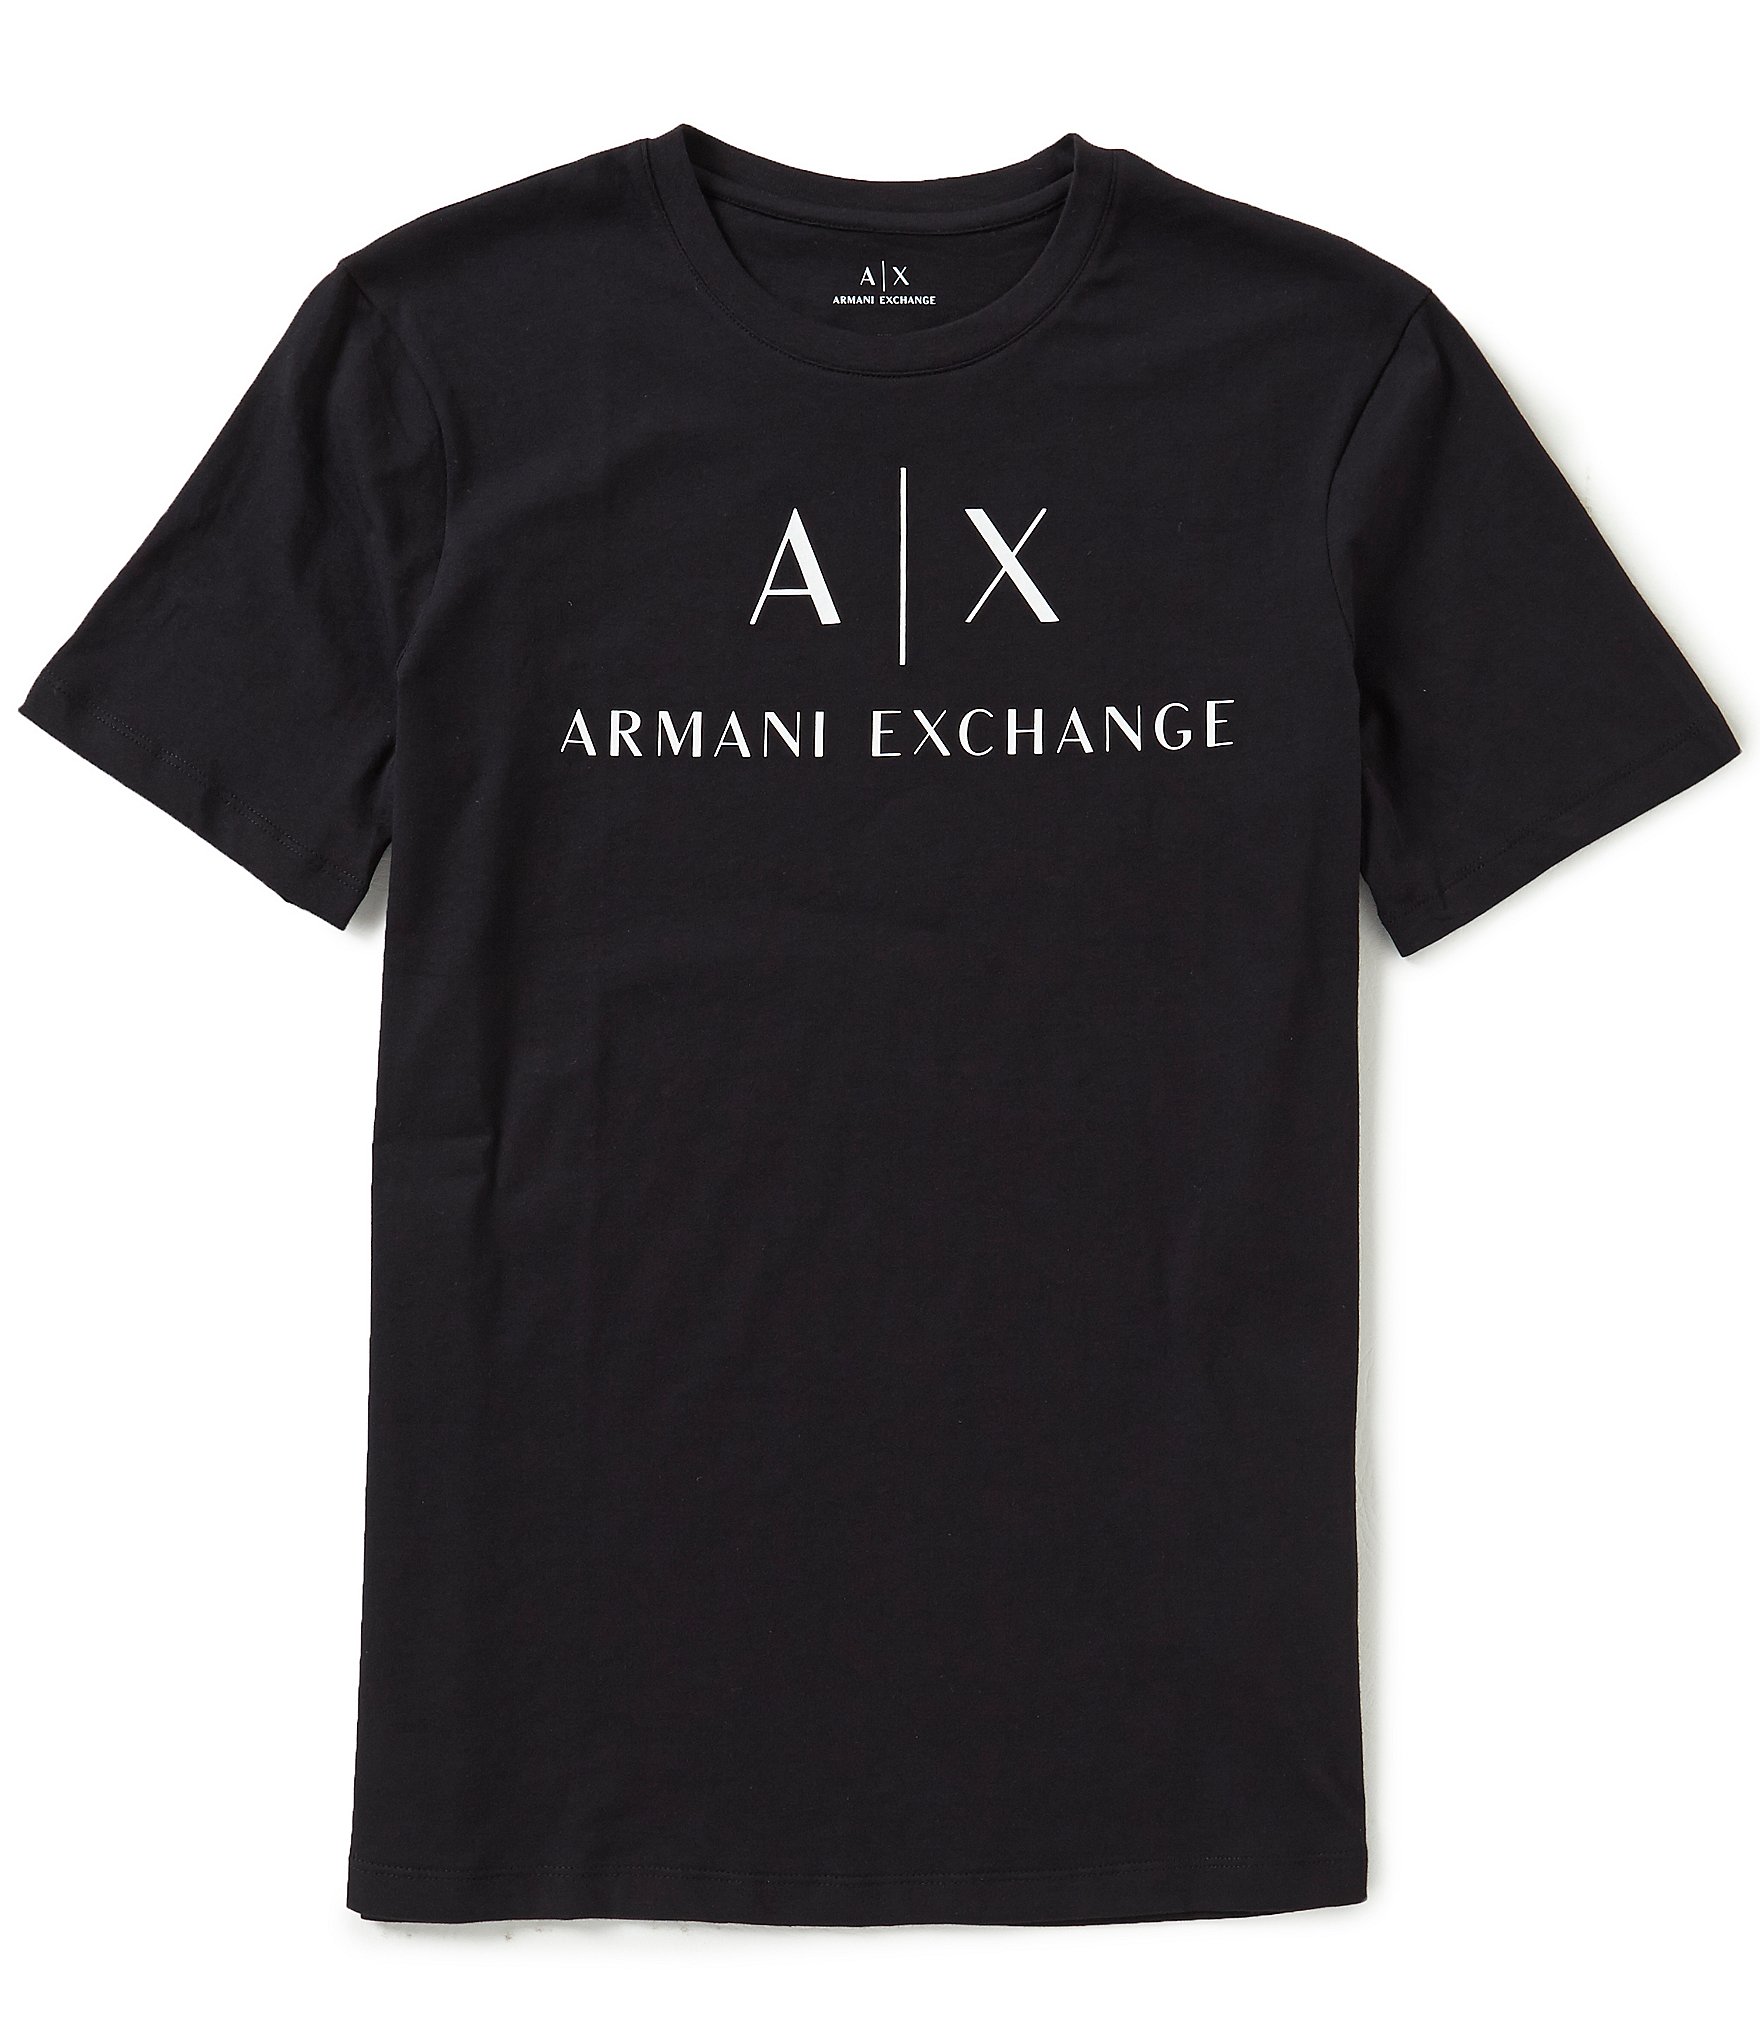 Ax armani exchange